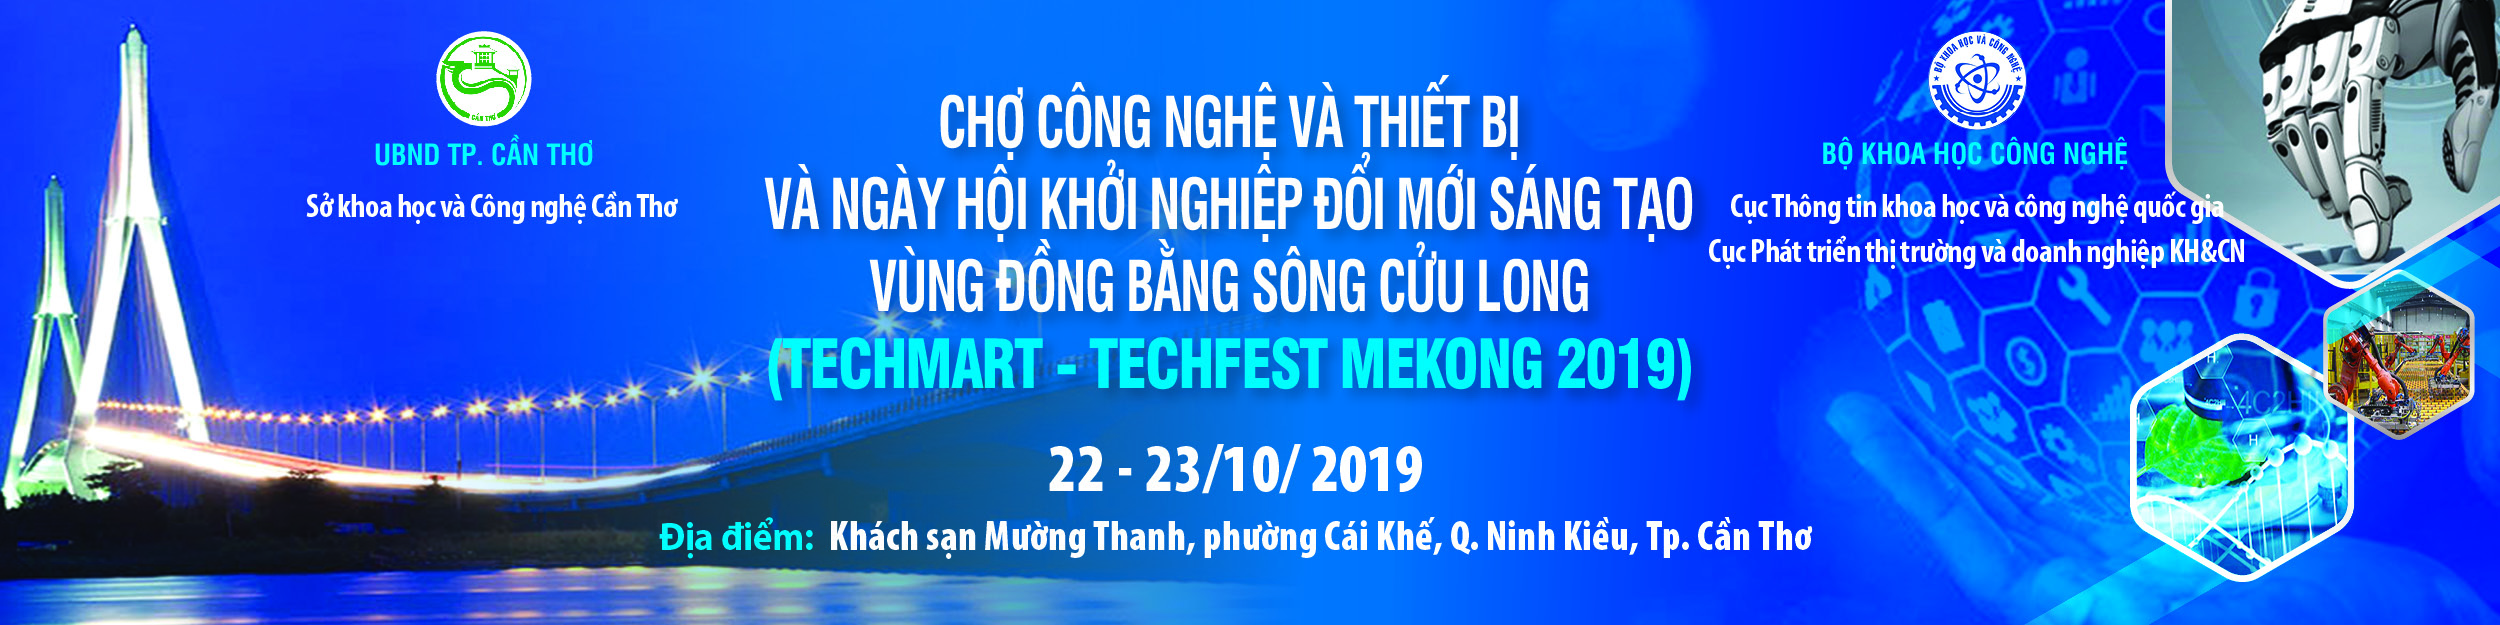 Chợ công nghệ và thiết bị vùng Đồng bằng sông Cửu Long 2019 (Techmart Mekong 2019)